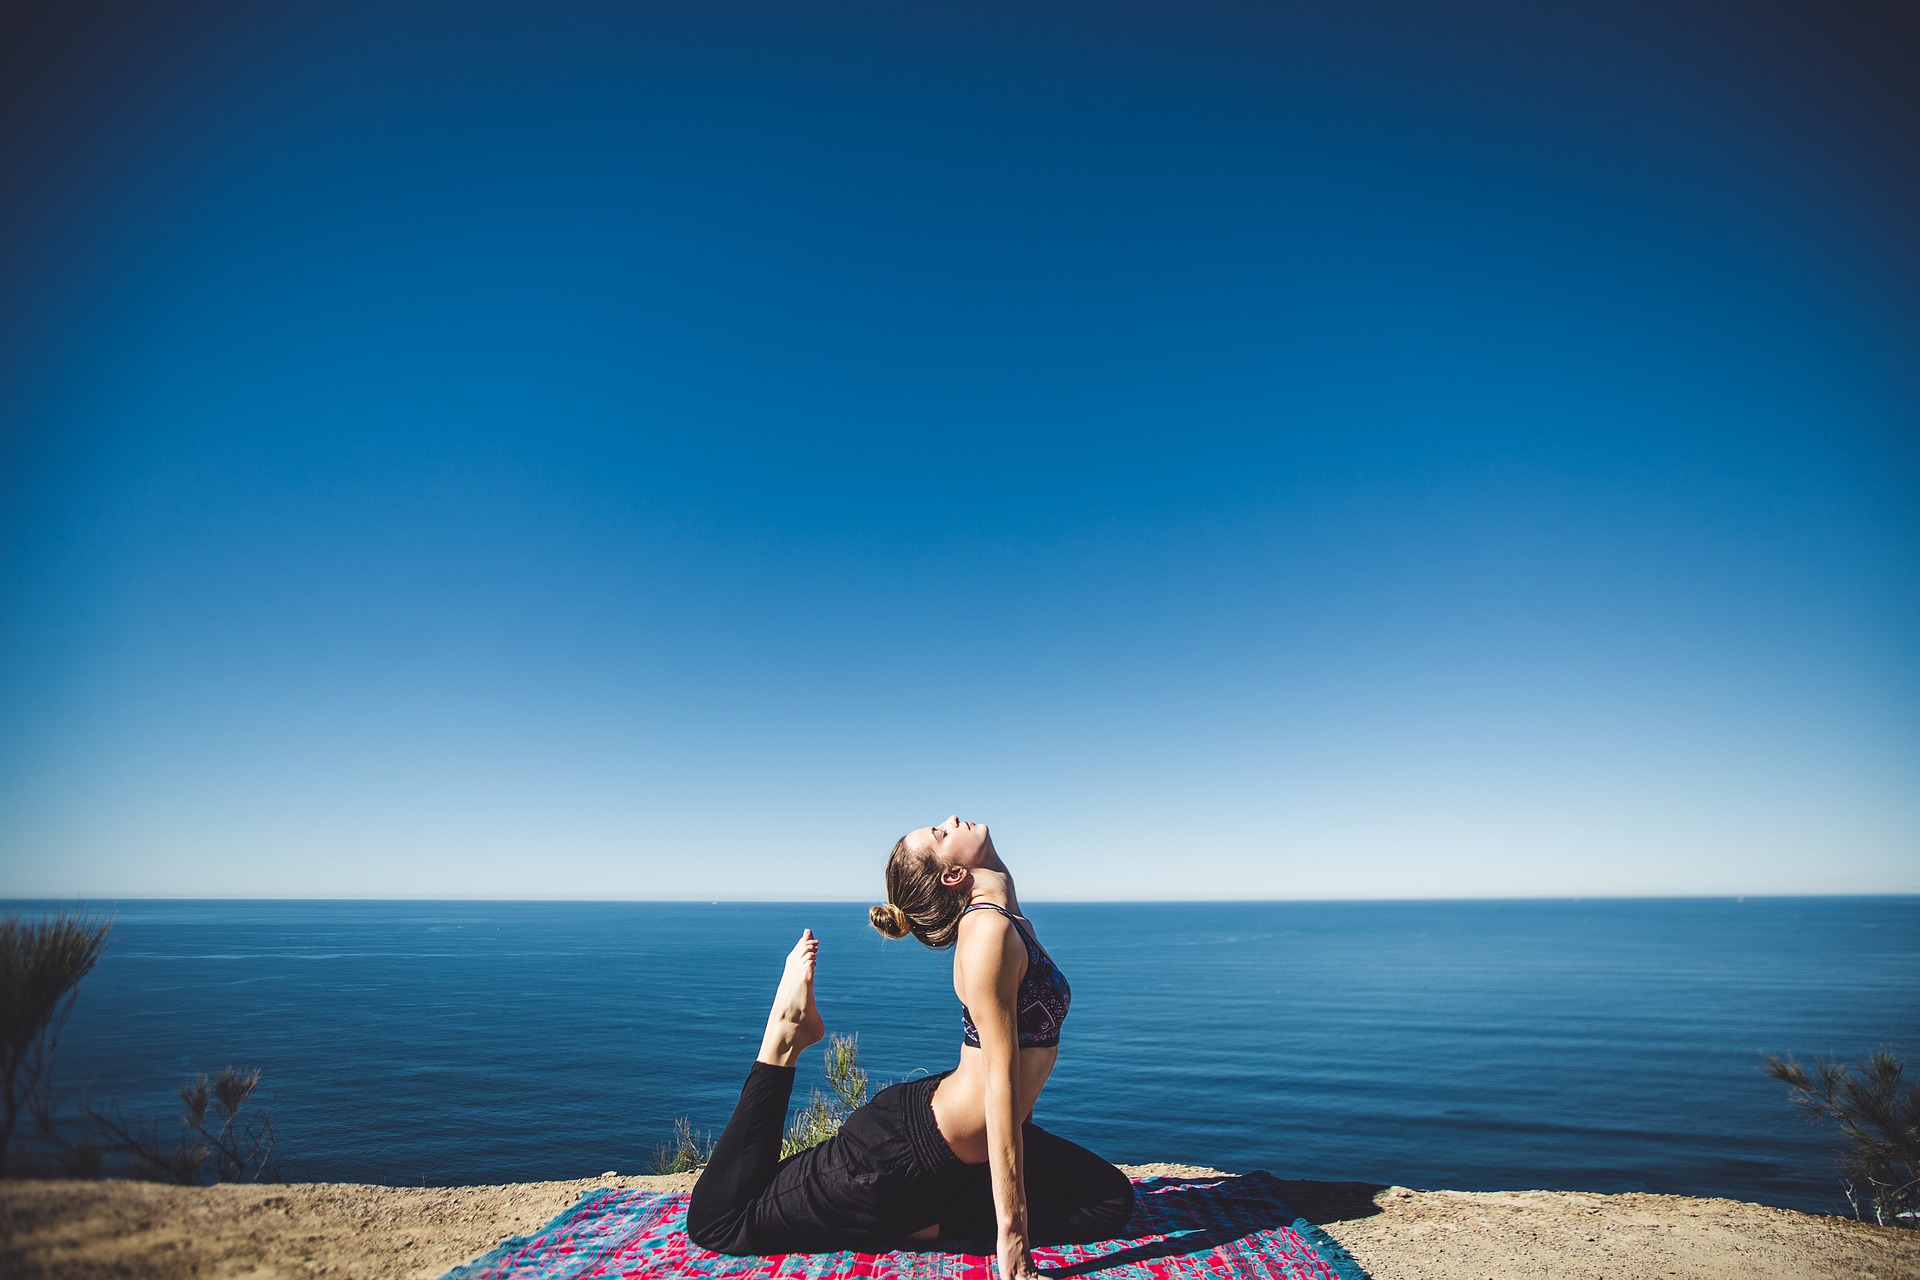 Vinyasa flow yoga, cos’è? Benefici della disciplina per dimagrire